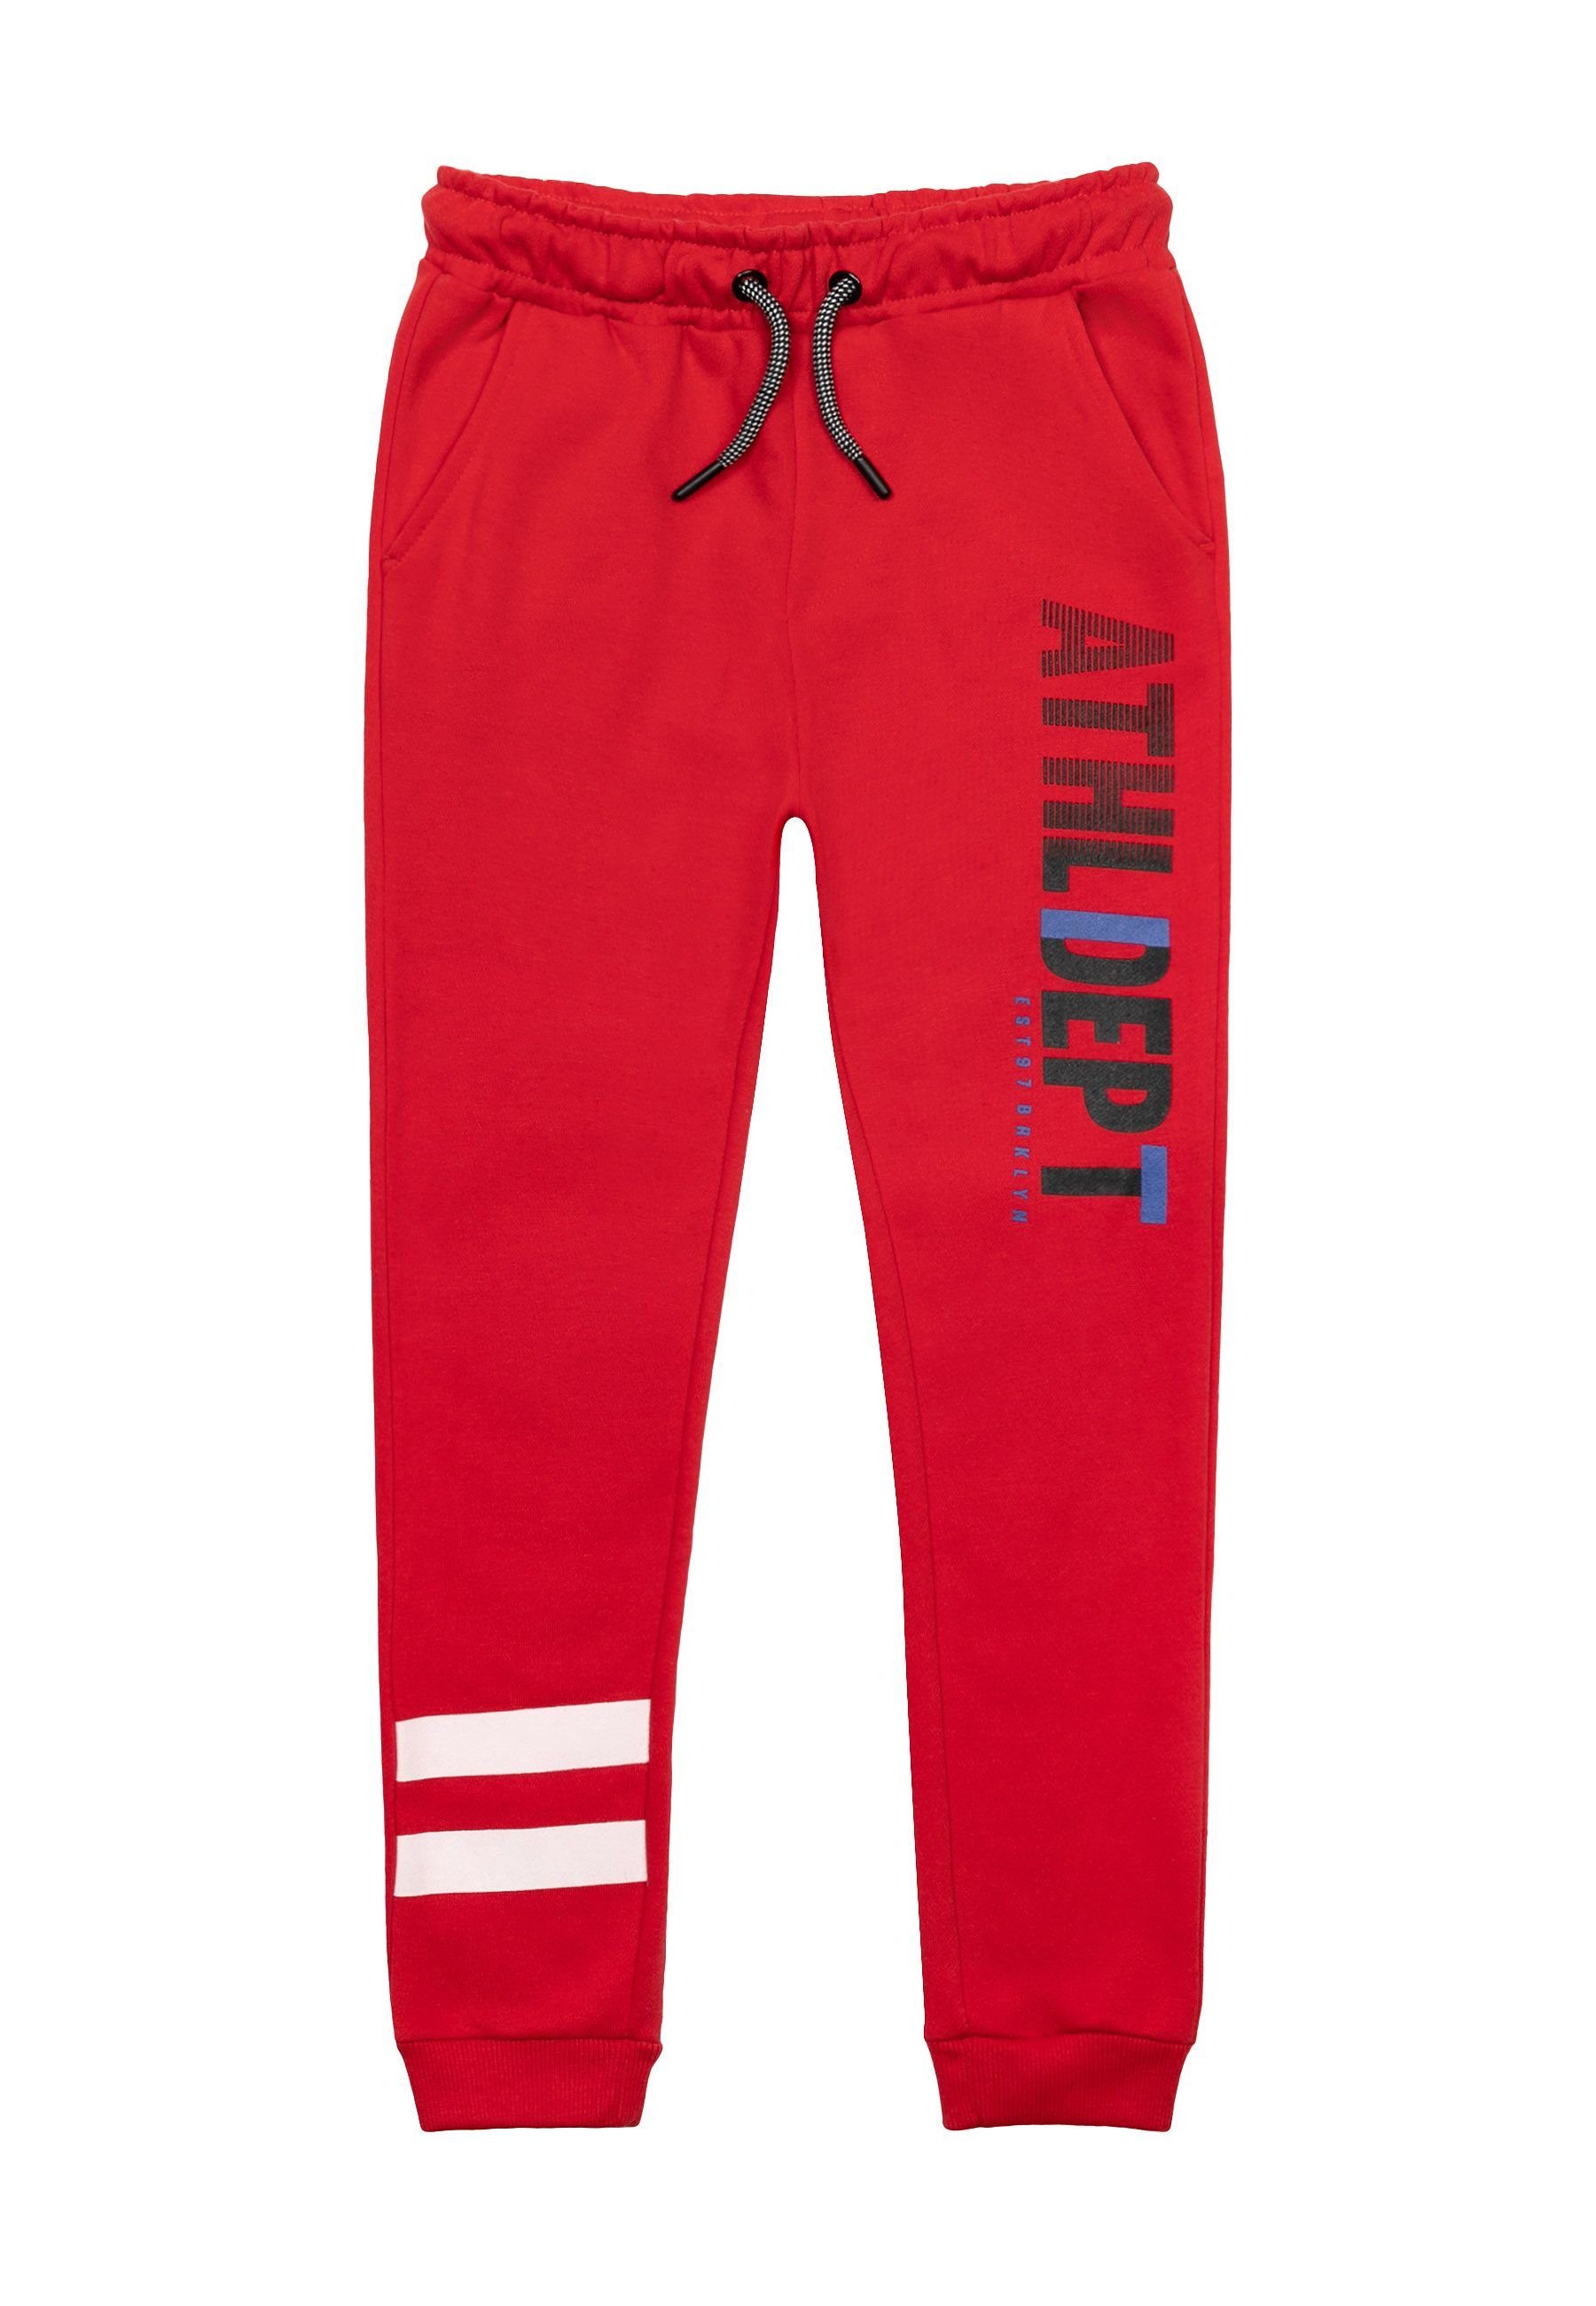 MINOTI Jogger Pants Sportliche lange Hose mit Aufschrift (1y-14y) Rot